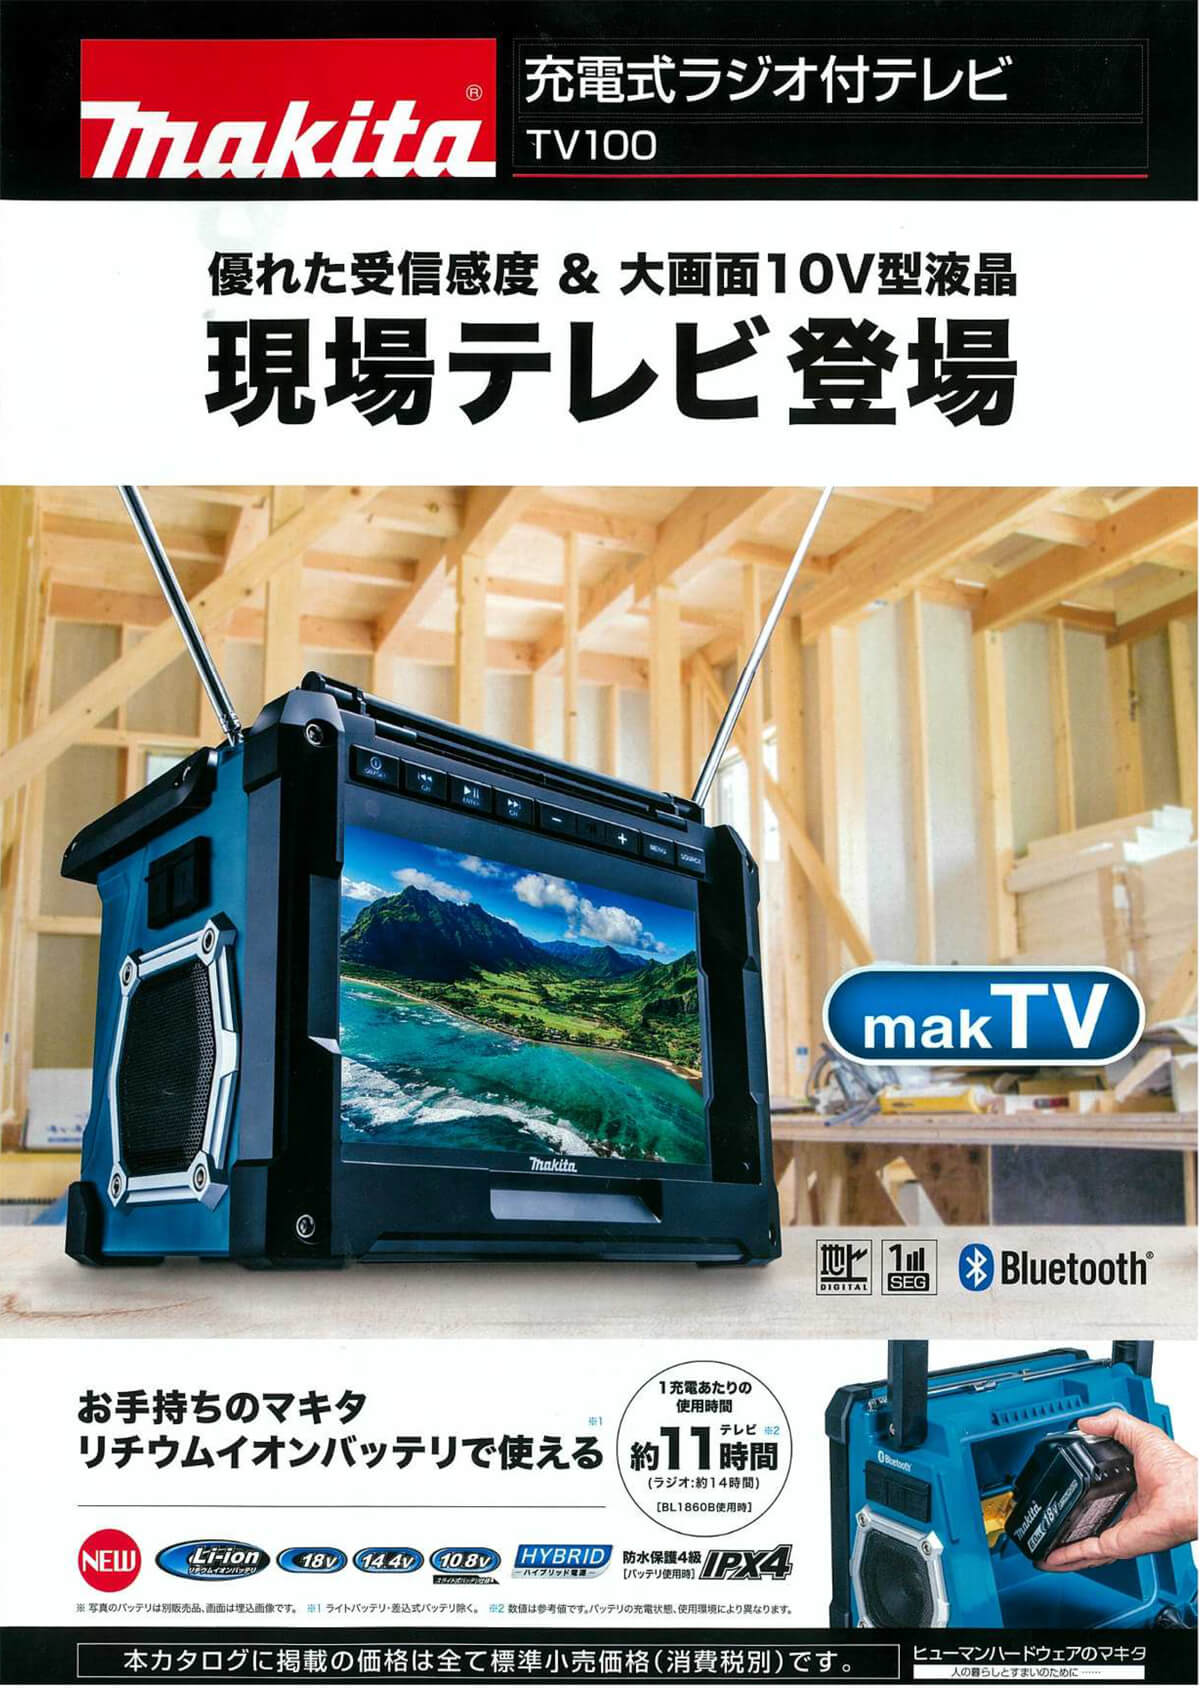 マキタ ラジオ付テレビ tv100 USB Bluetooth